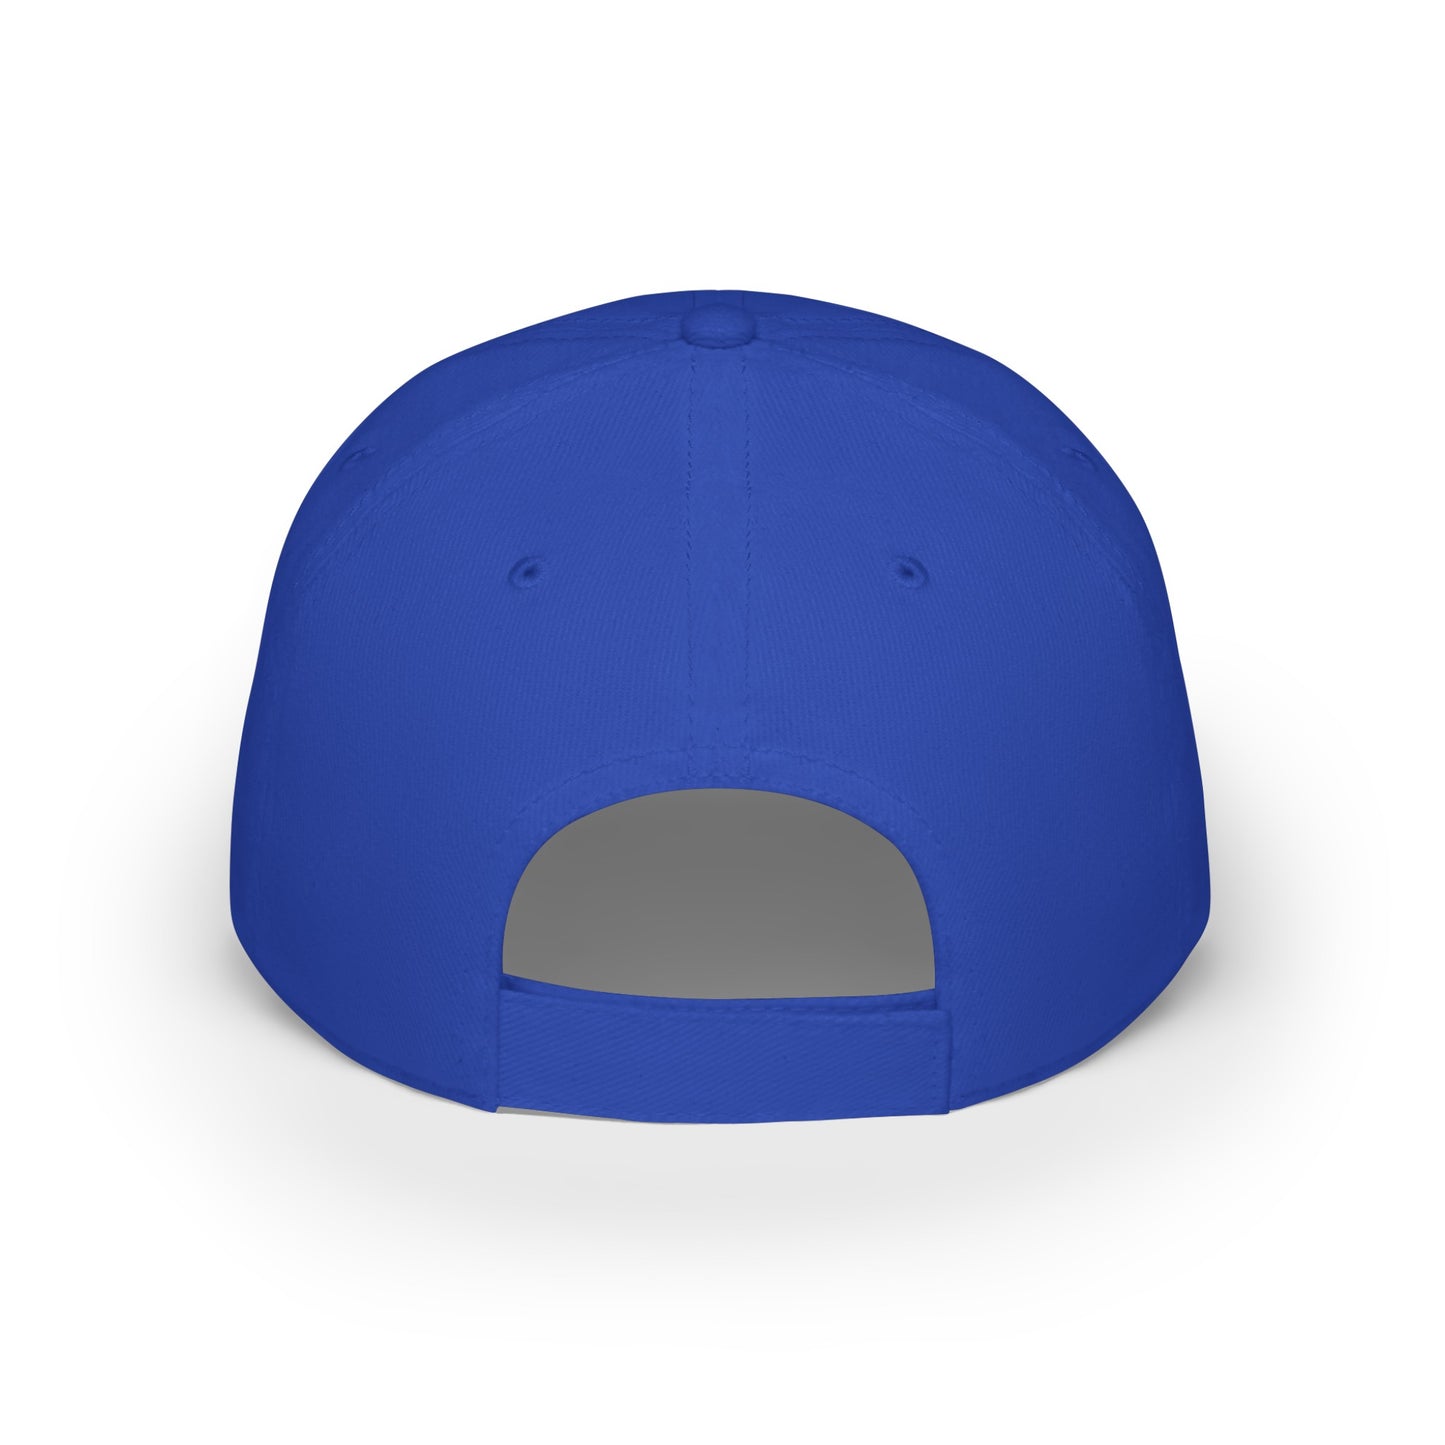 MDBTDJ#WBLUWGC - Low Profile Baseball Cap Tattooed Dj's Limited Edition, Hats, Tattooed Djs Shop